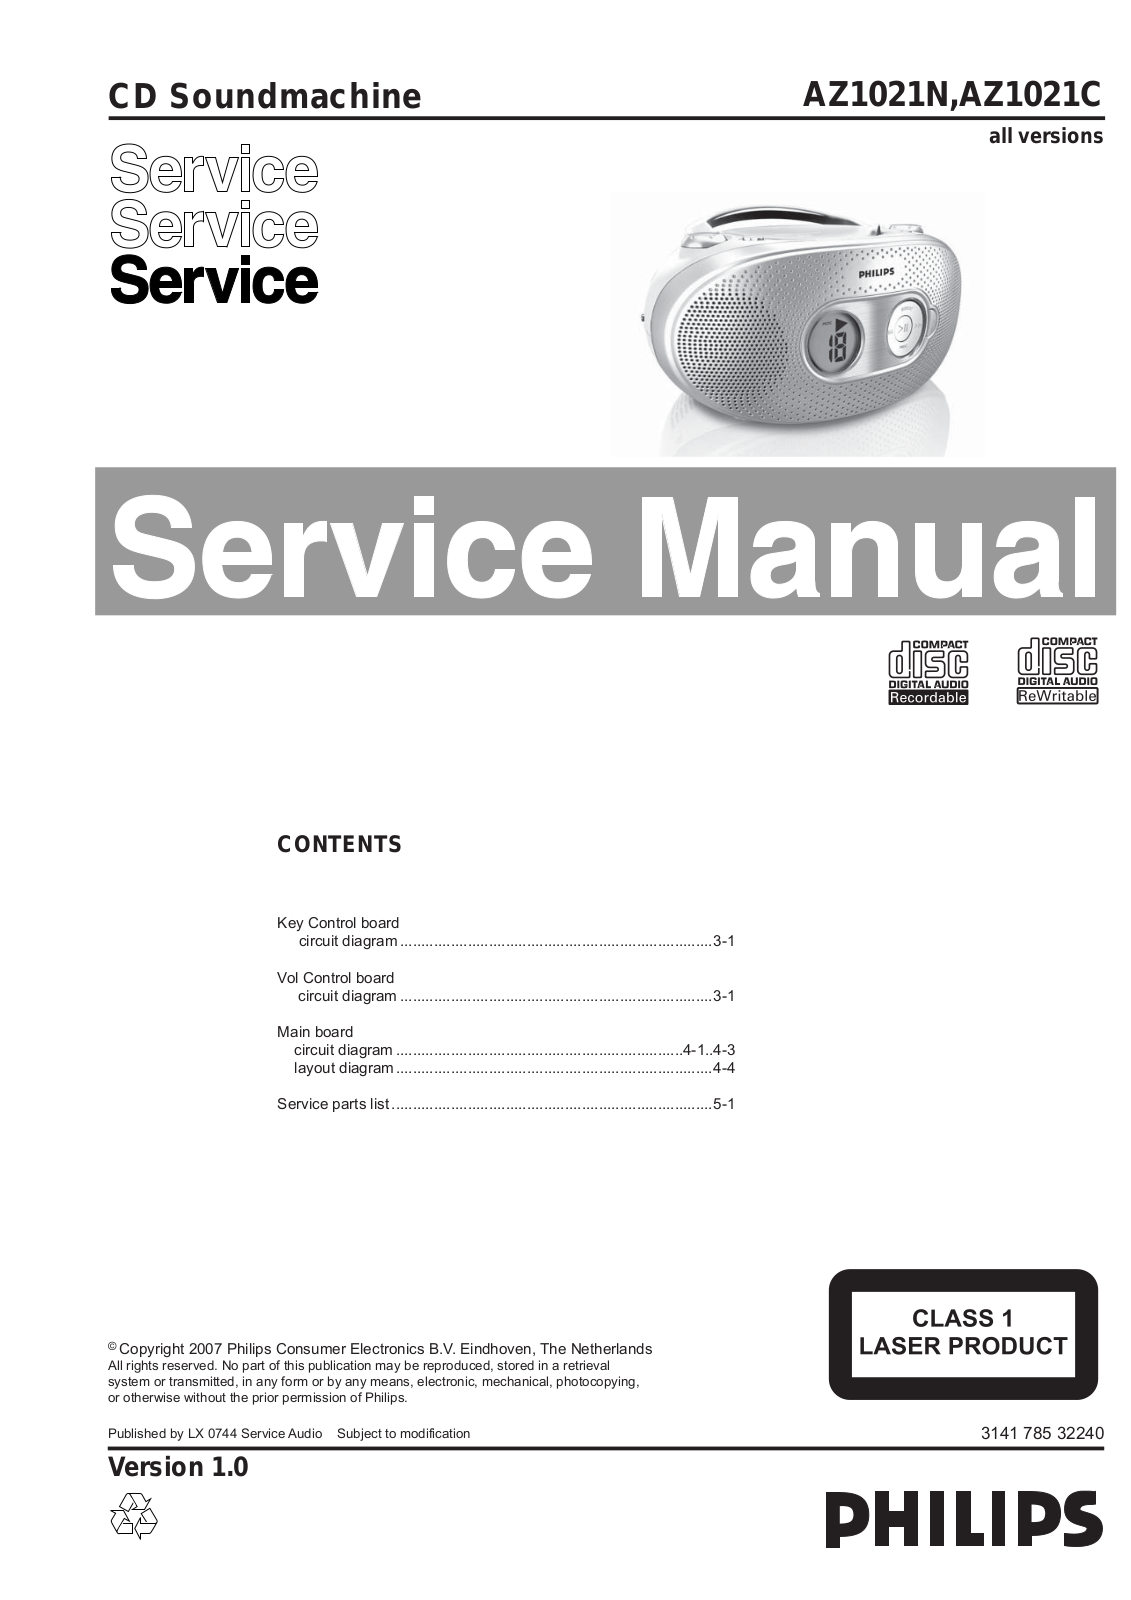 Philips AZ-1021-N, AZ-1021-C Service Manual